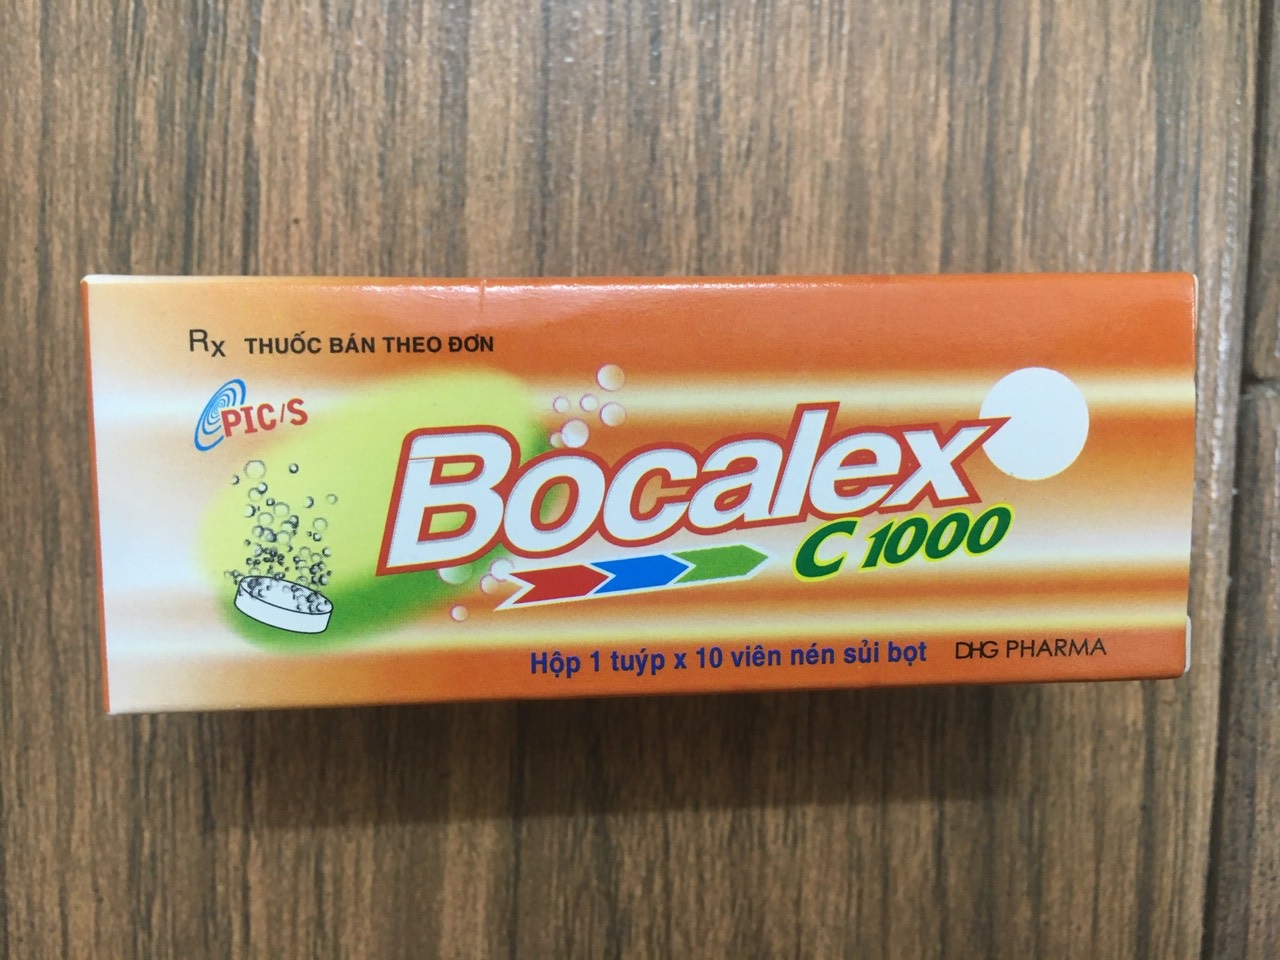 Bocalex C1000